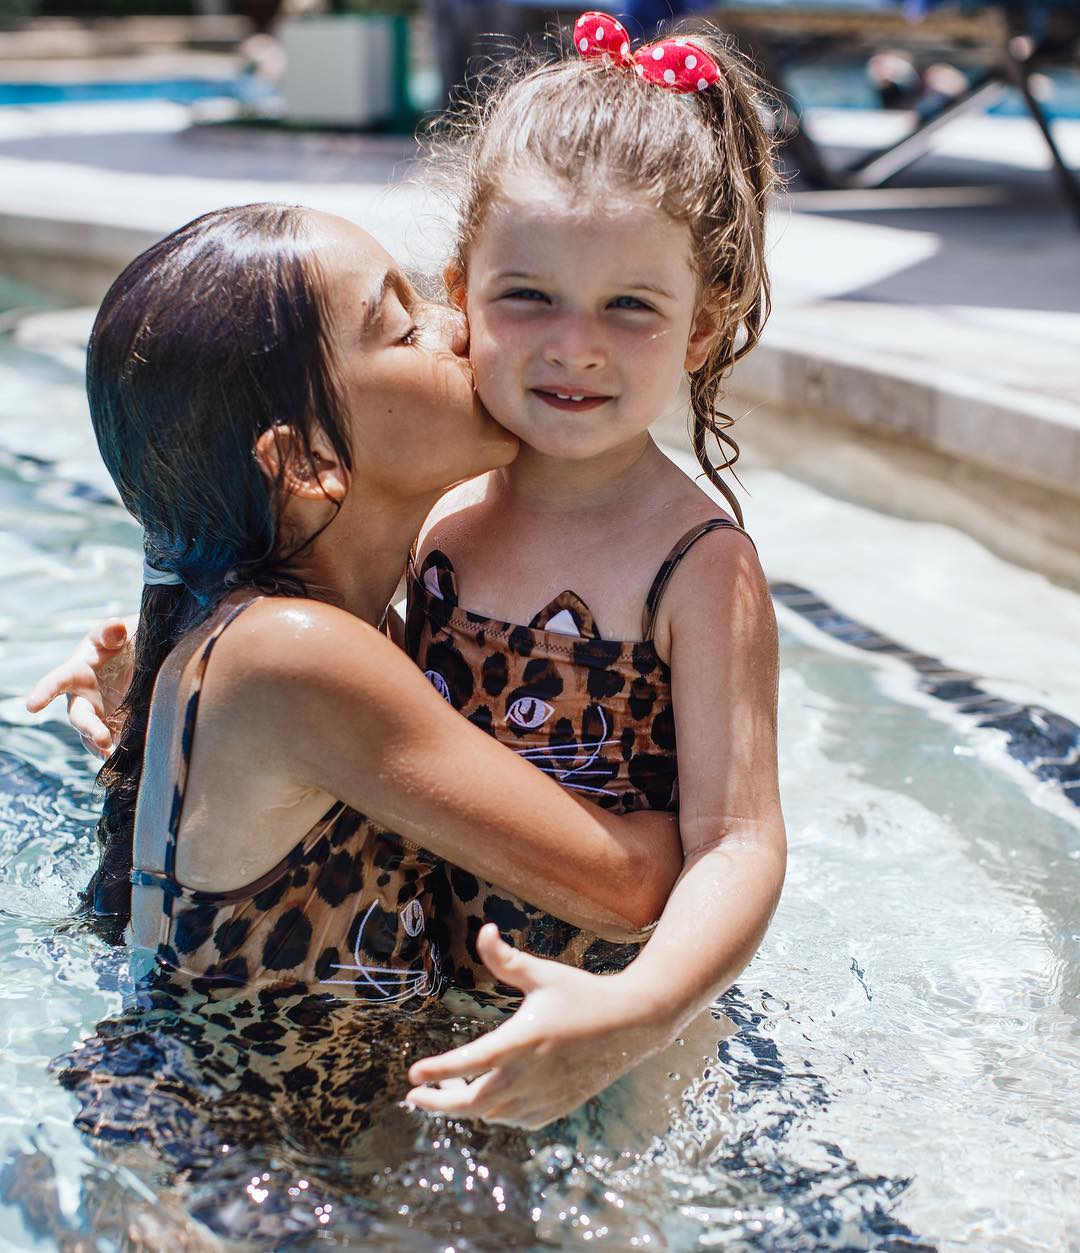 Какие купальники носят дети знаменитостей. Фото: официальна страница Ксении Бородиной в инстаграме*.